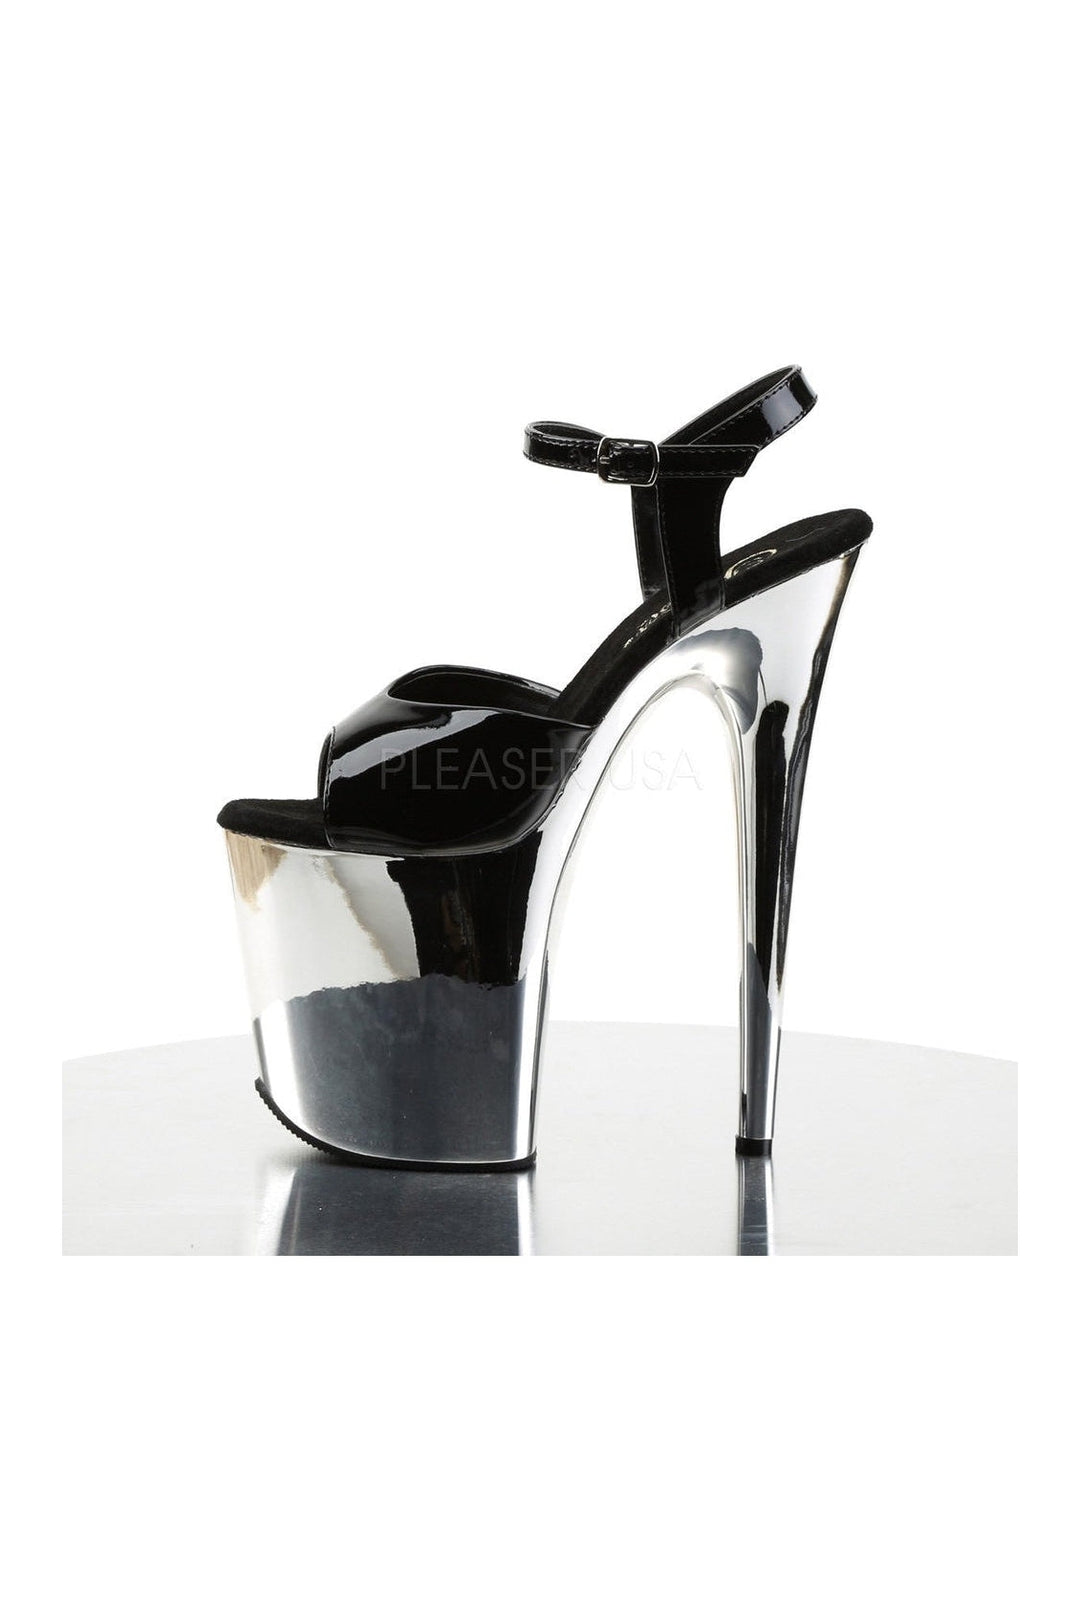 FLAMINGO-809 Platform Sandal | Black Patent-Pleaser-Sandals-SEXYSHOES.COM